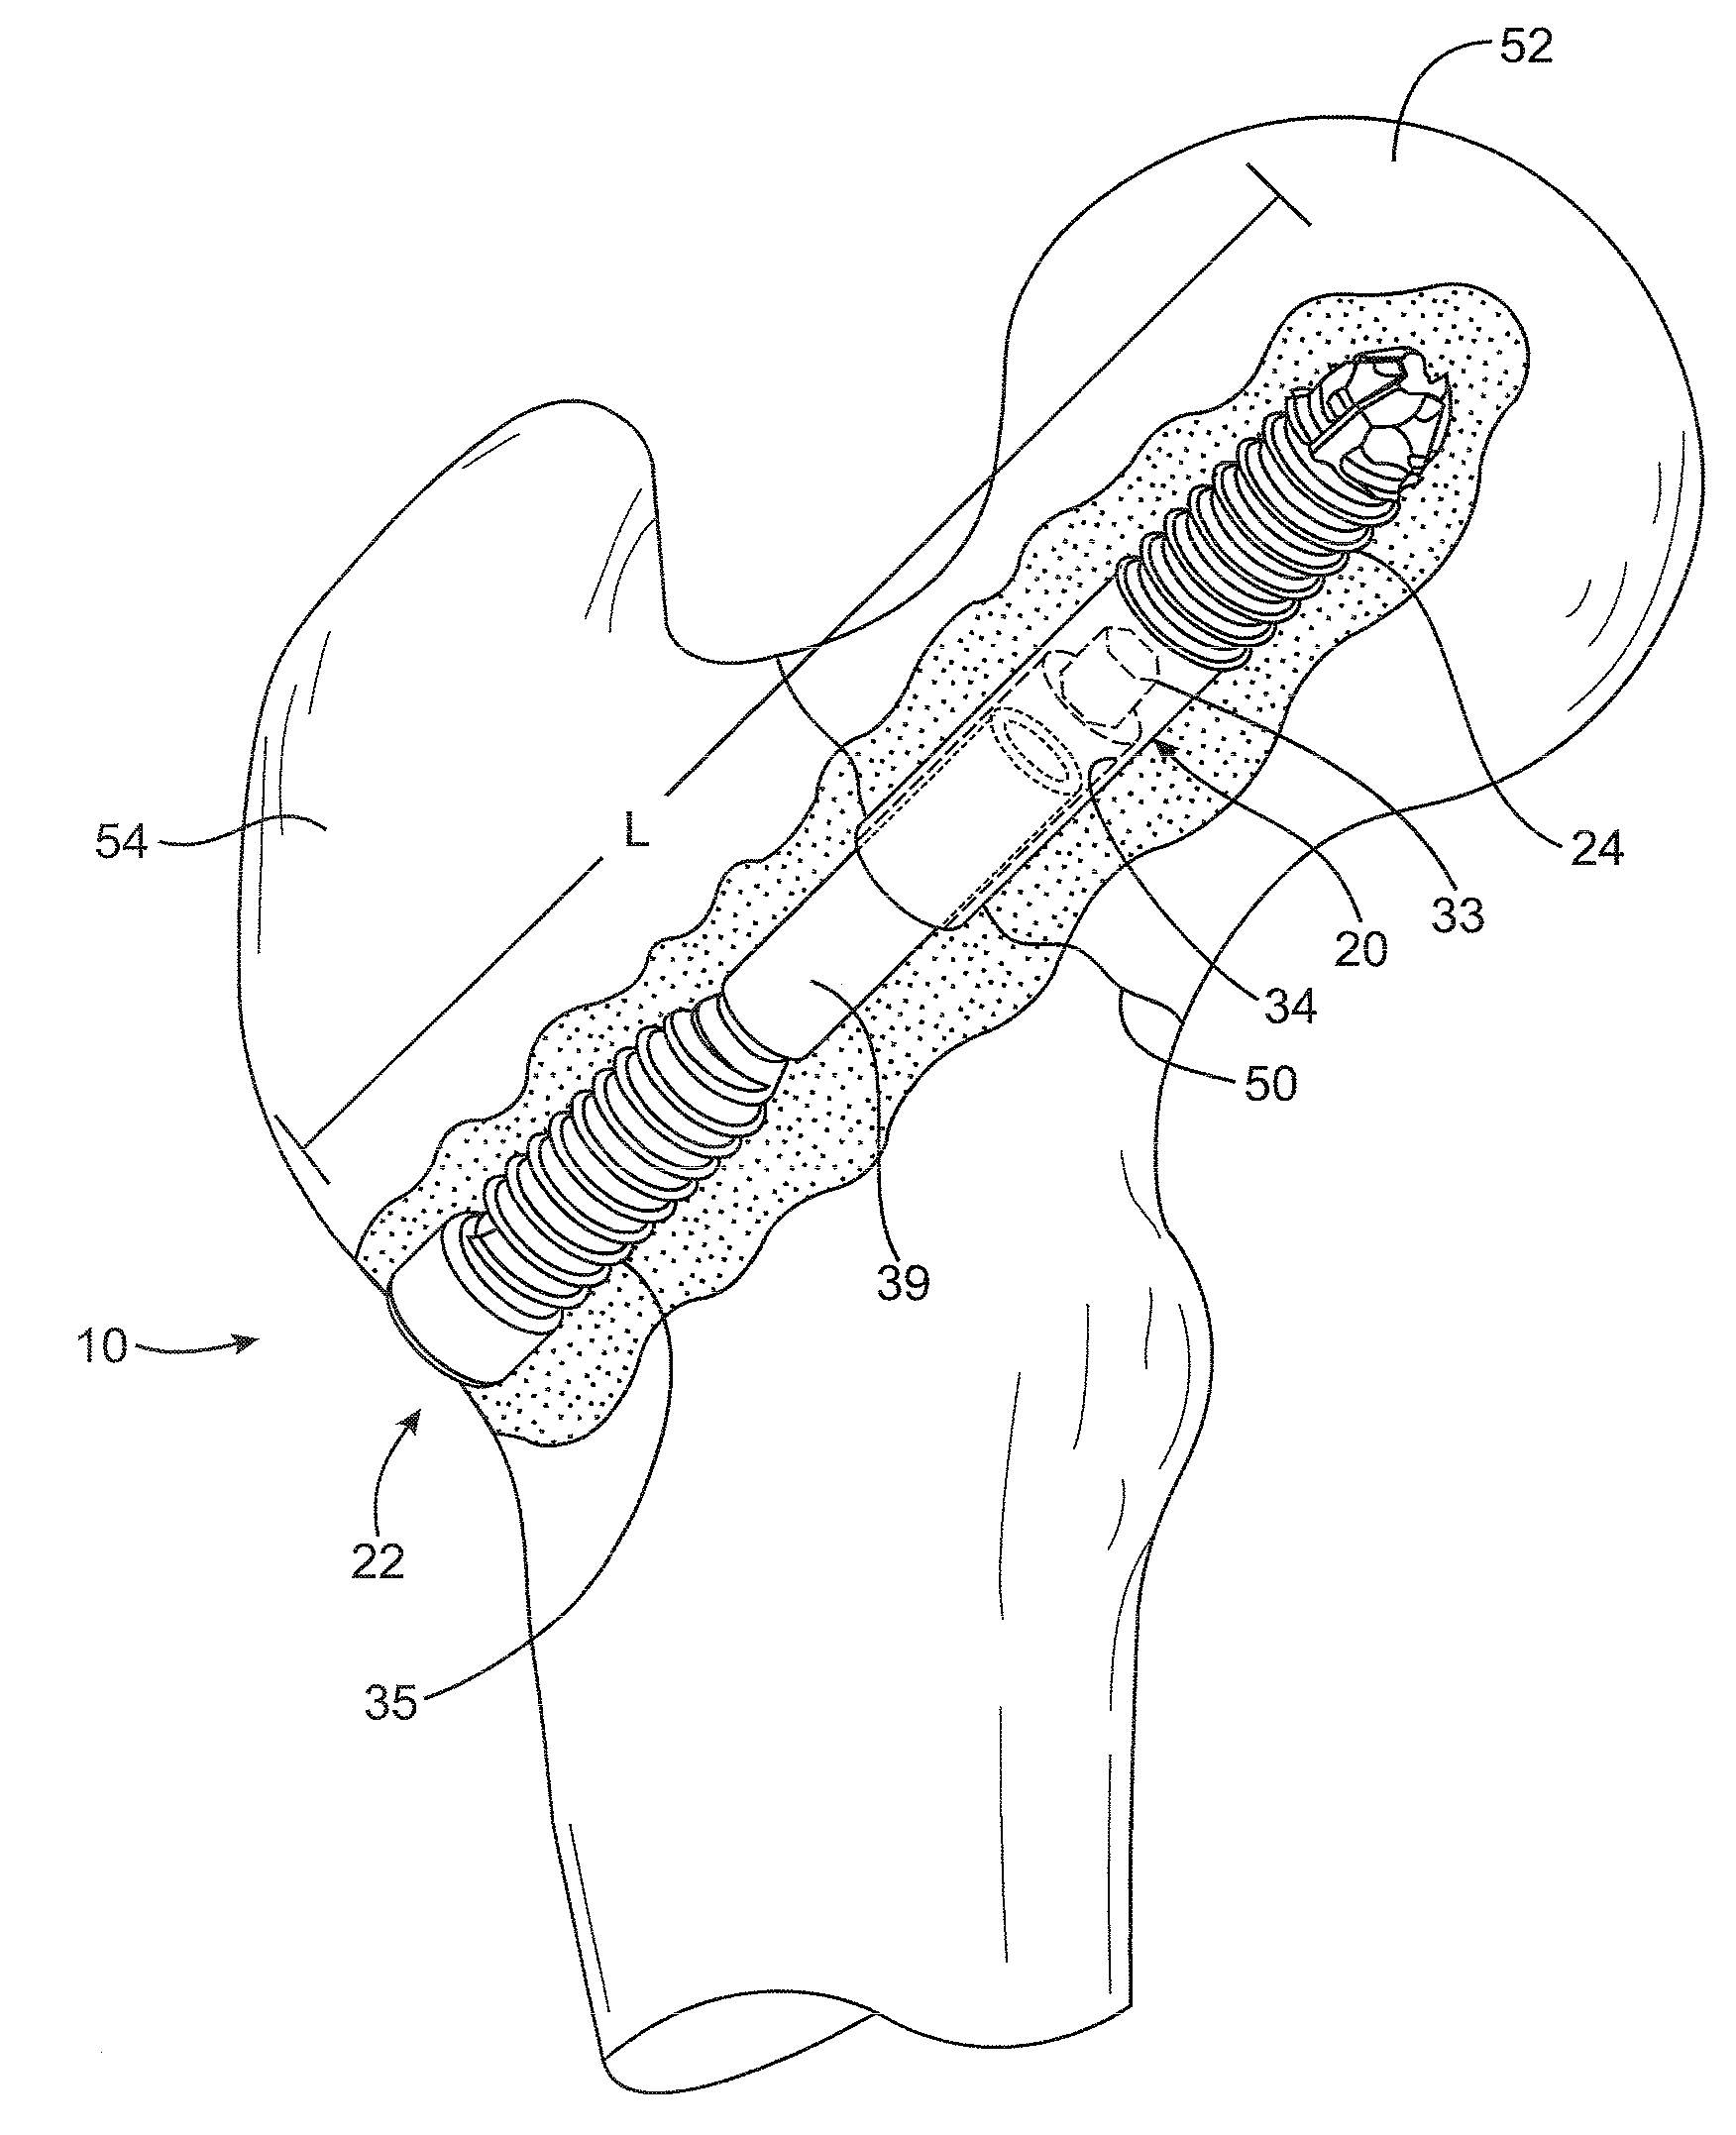 Collapsible bone screw apparatus